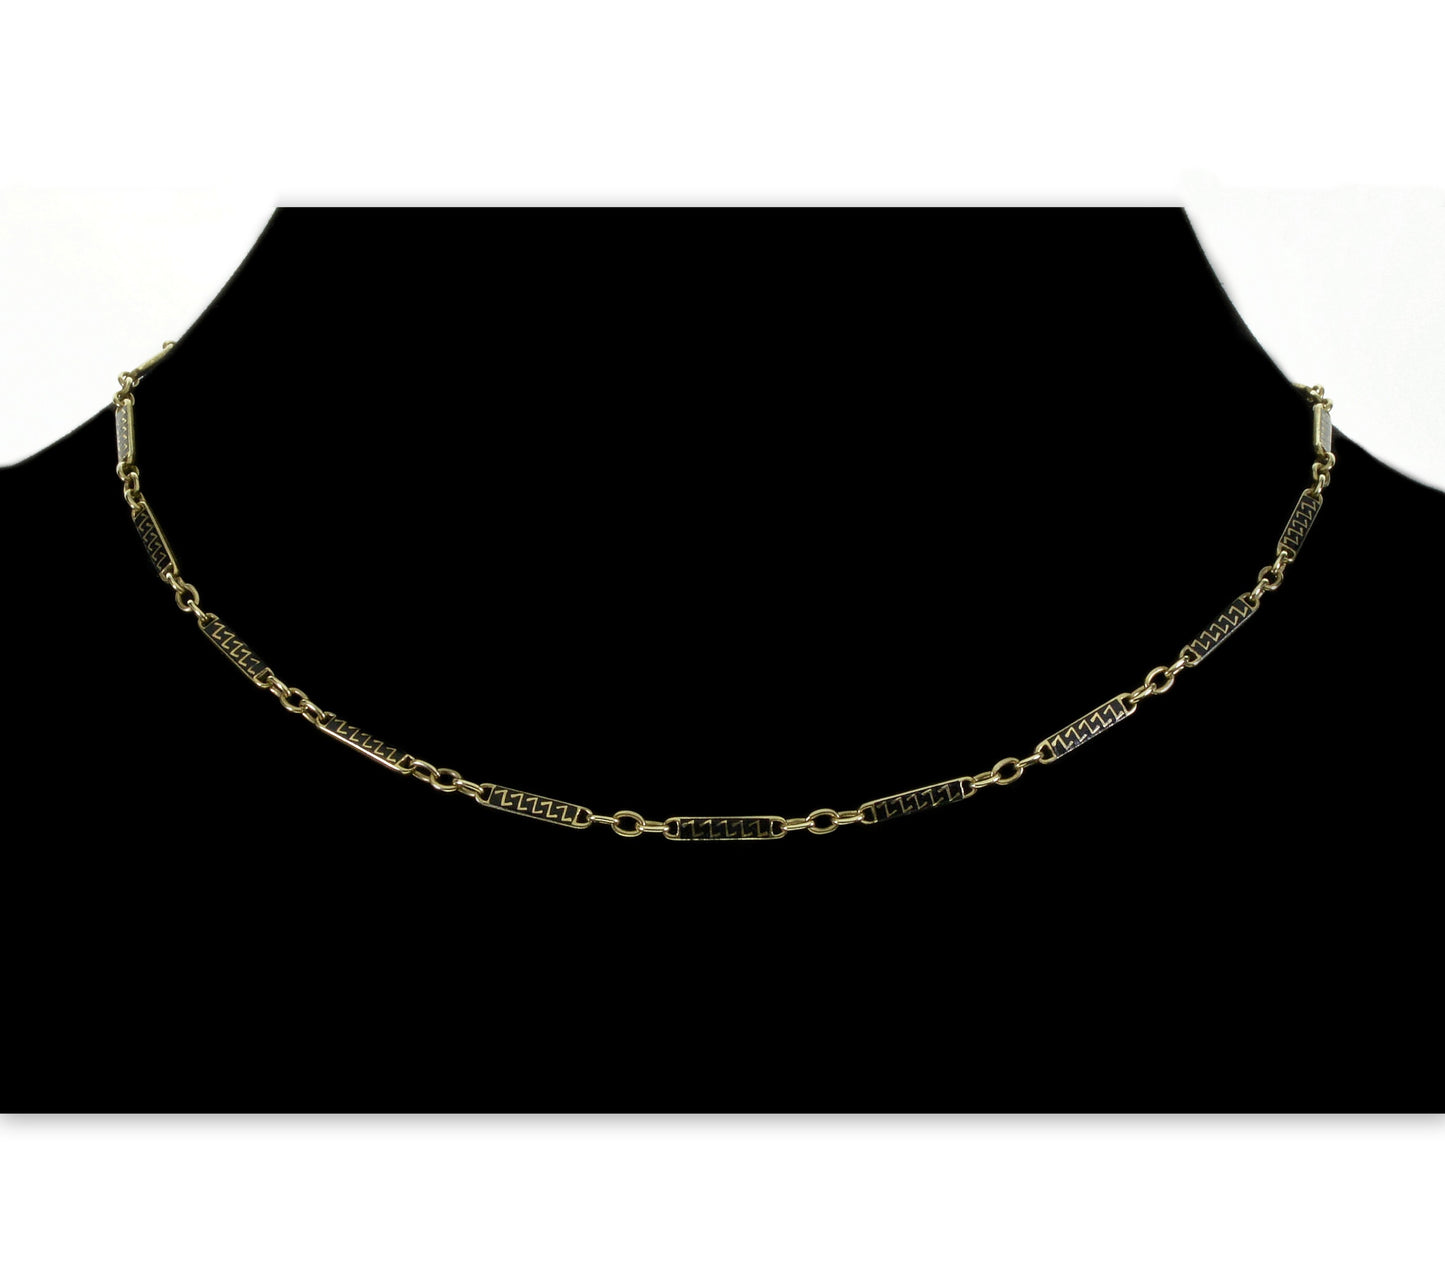 Antique Art Deco 14K Gold Enamel Bar Chain Necklace C.1920